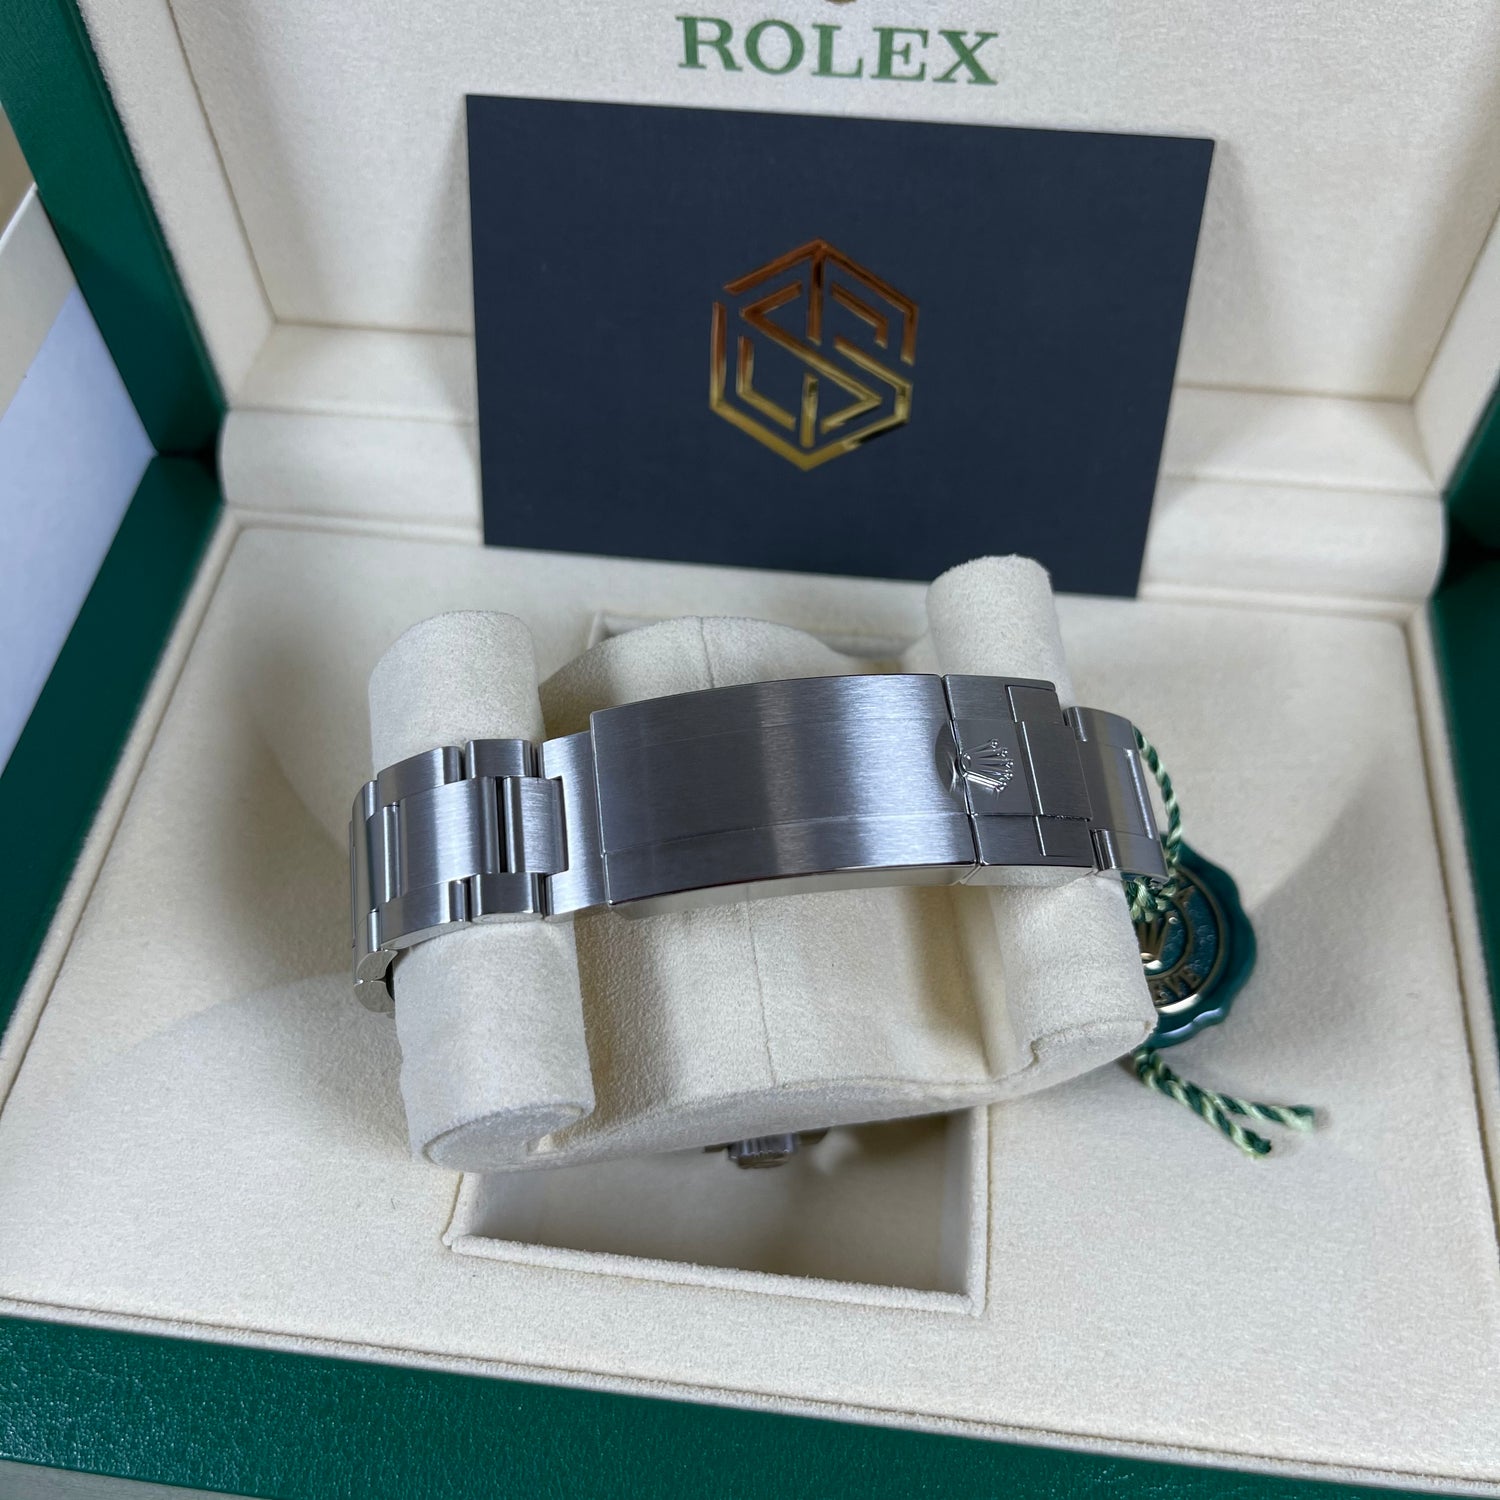 Rolex DeepSea James Cameron 126660 2020 Unworn Full Set Watch